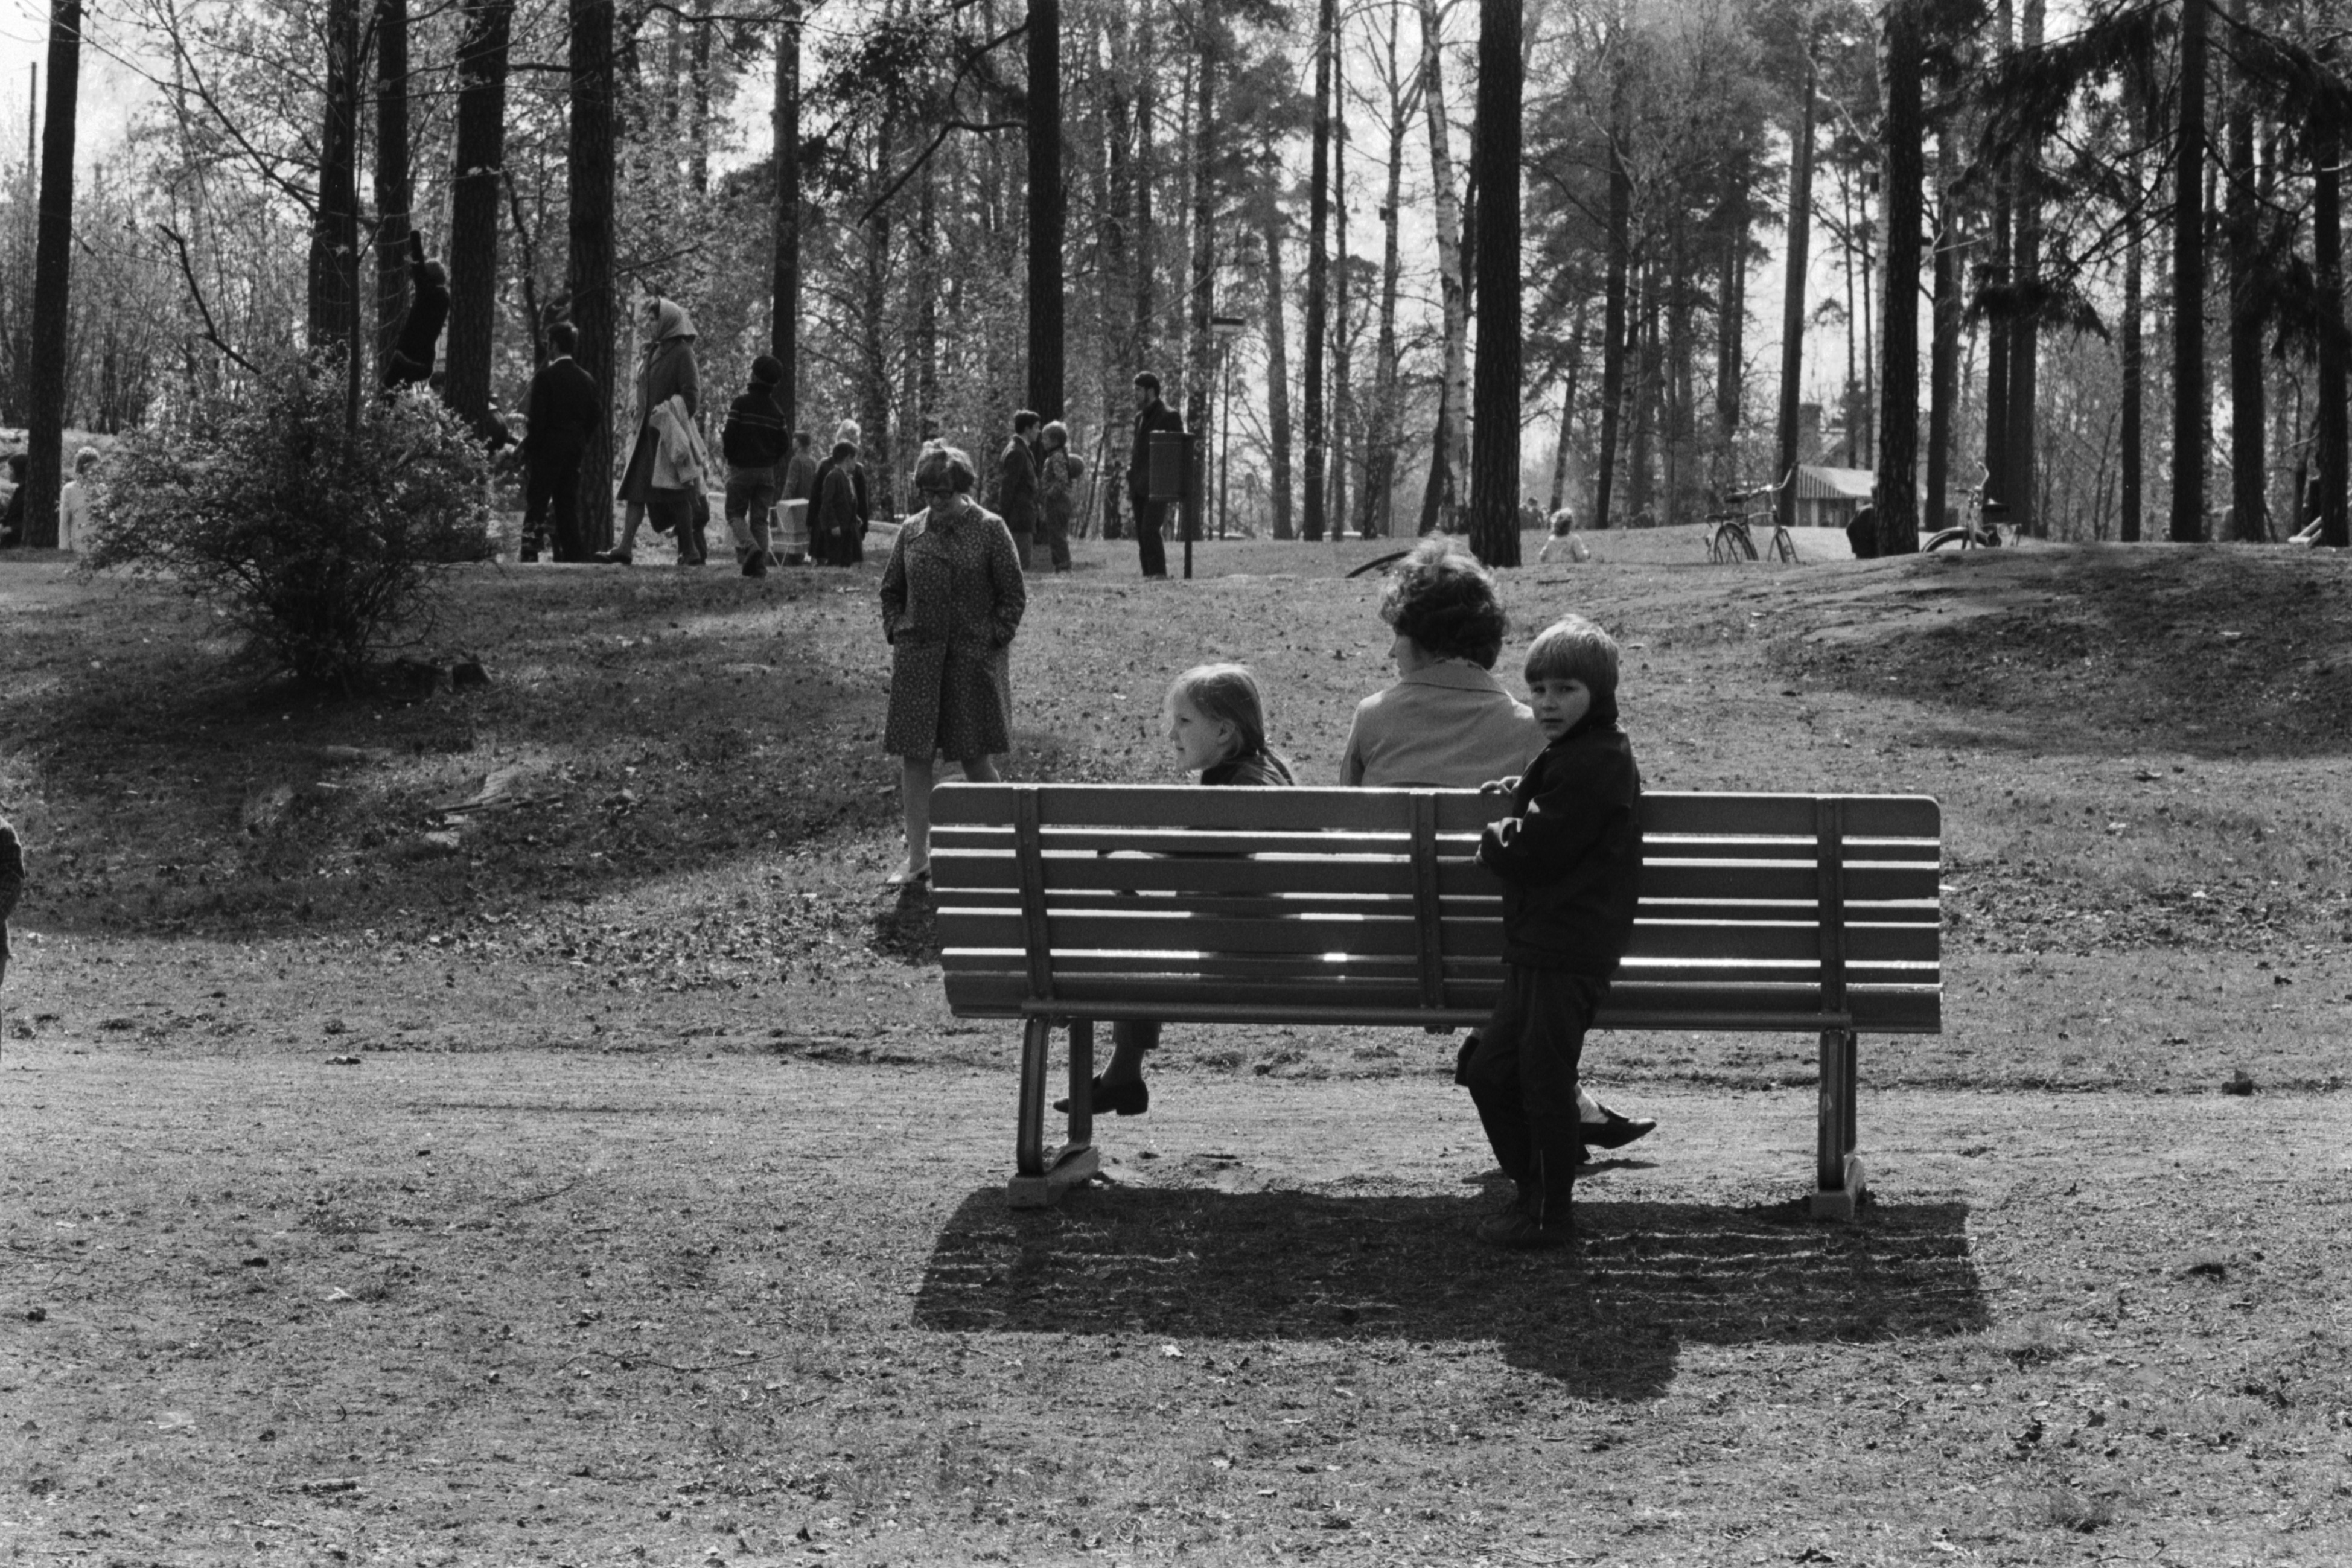 Sibeliuksen puisto. Helsingin juhlaviikot. Nainen ja kaksi lasta penkillä puistotapahtuman aikaan aurinkoisessa Sibeliuksen puistossa.